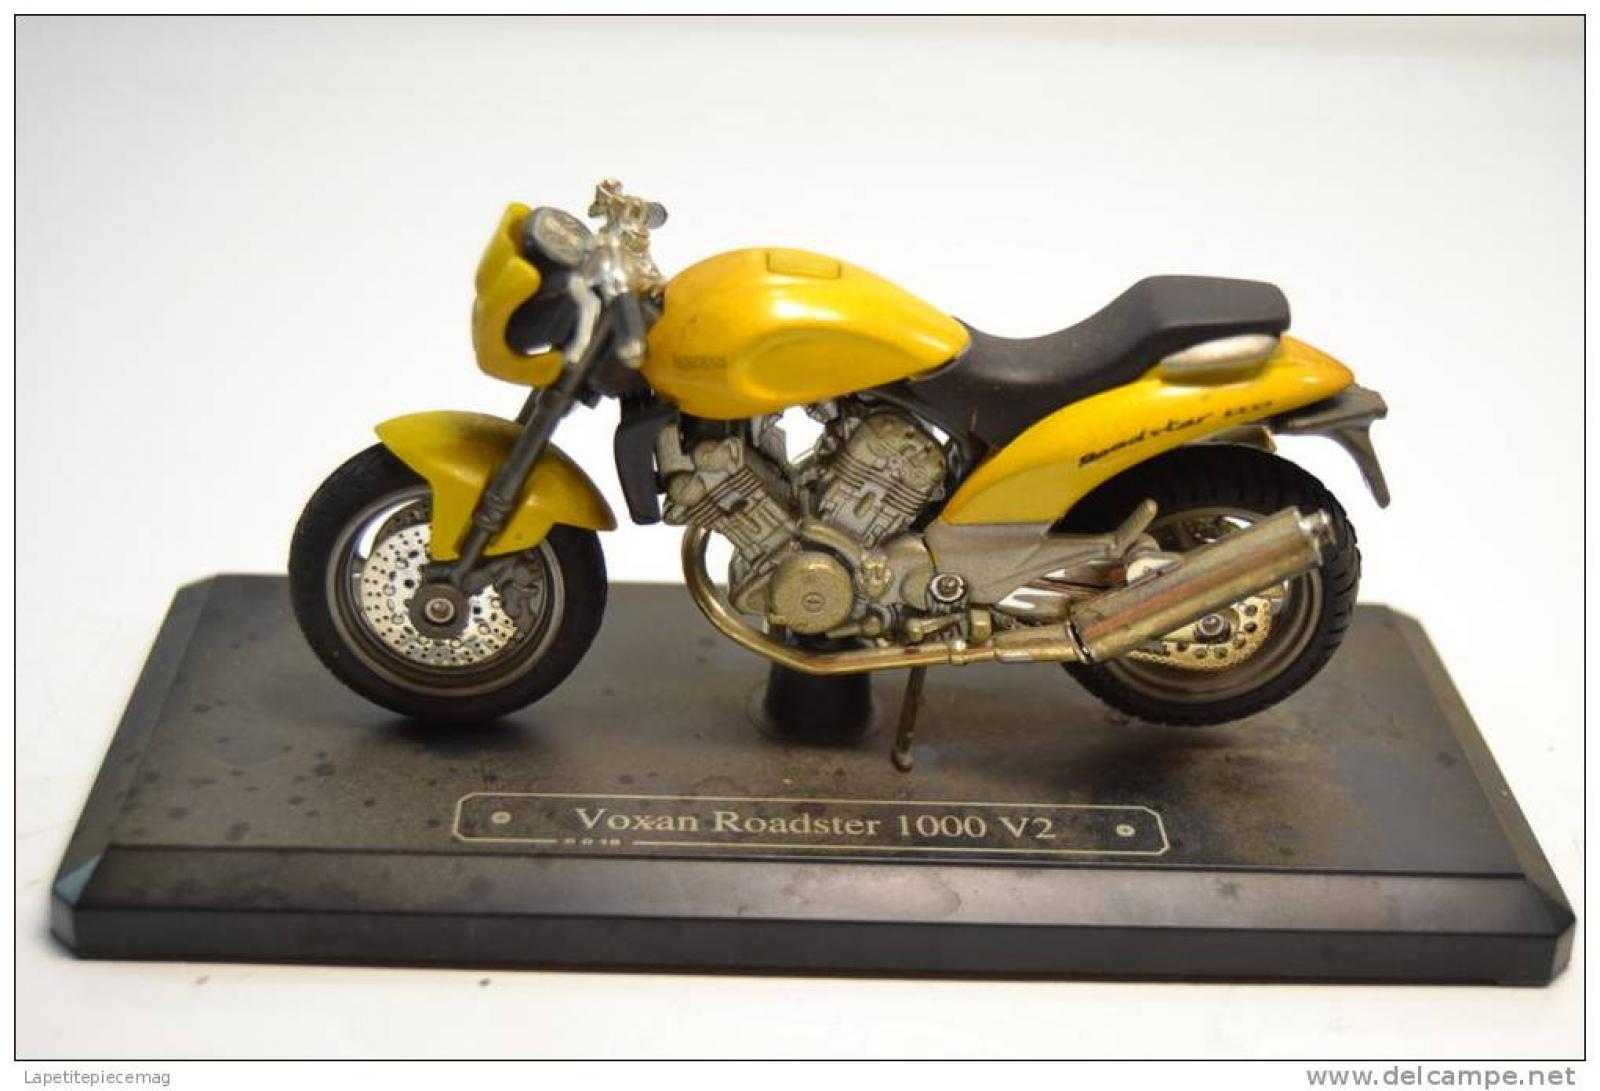 Majorette Voxan Roadster V1000 1:18 Yellow 